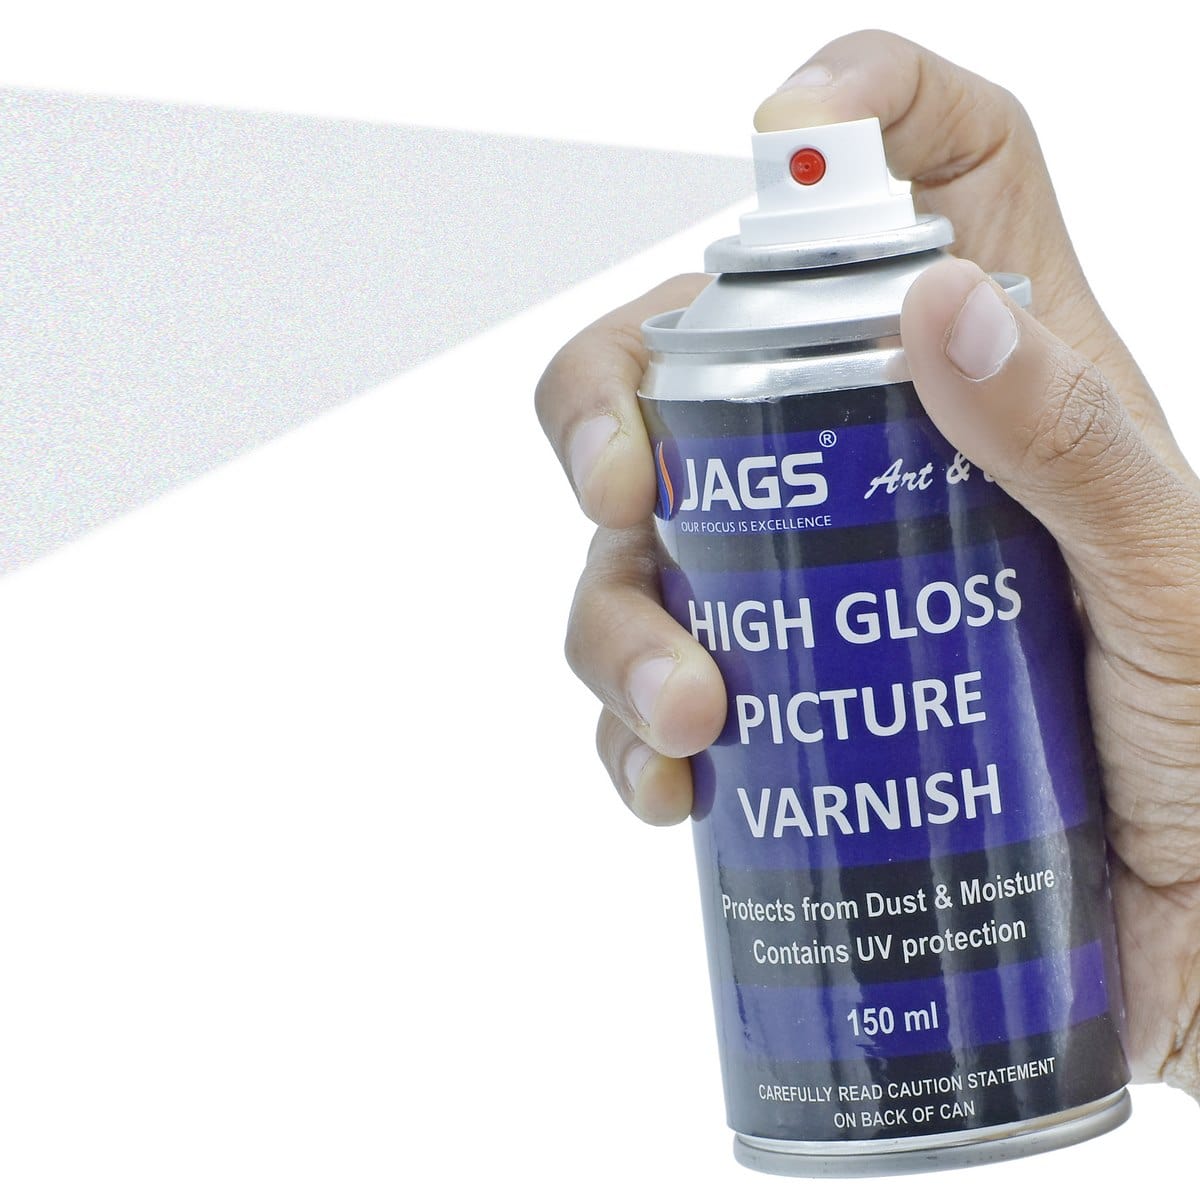 jags-mumbai Spray Paint Jags Spray Picture Varnish Gloss 150ML JSPV00